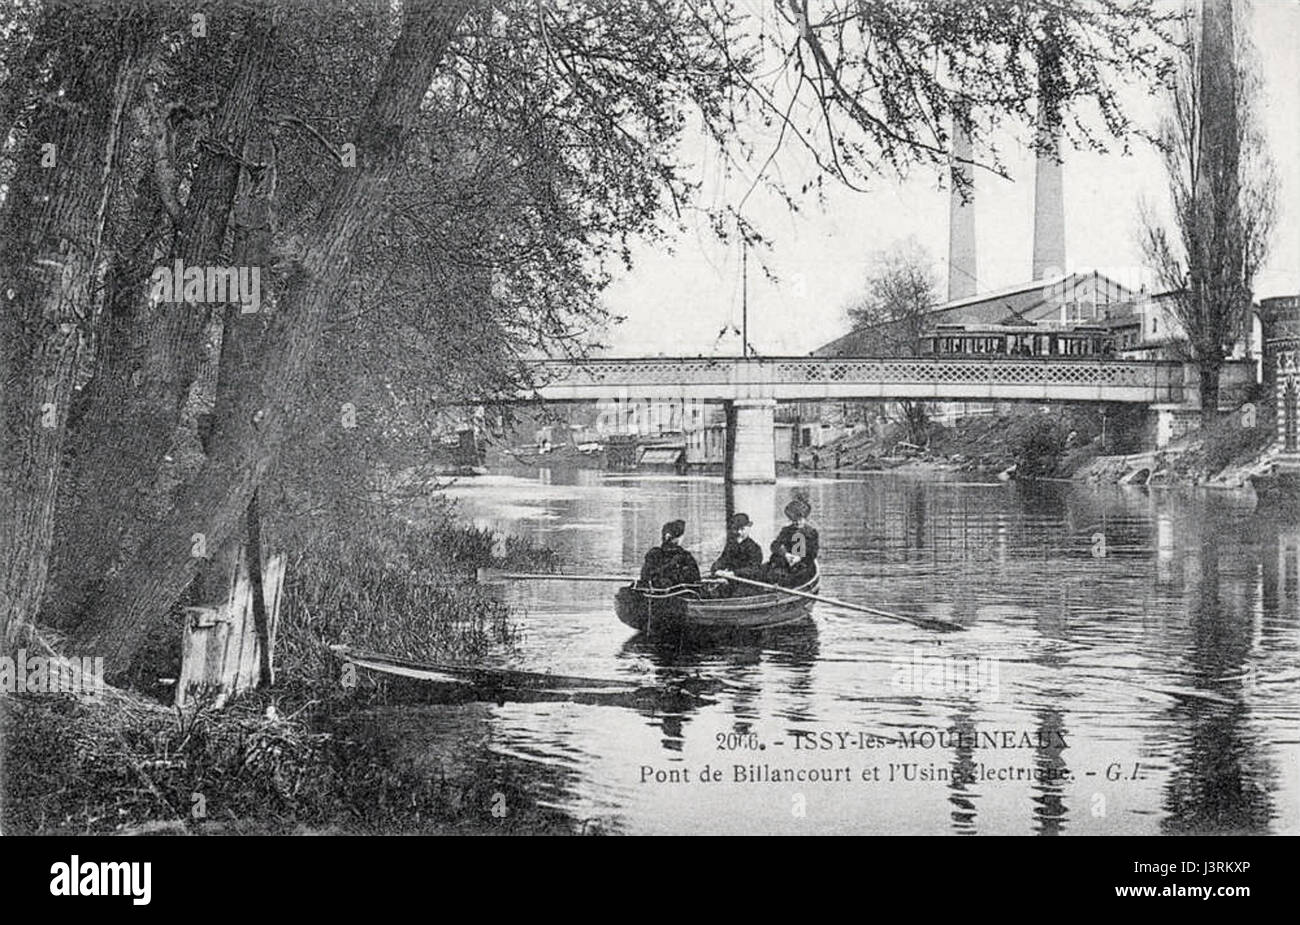 Issy Les Moulineaux, pont de Billancourt et l'usine Electrique, carte postale distribuée 1908 Banque D'Images